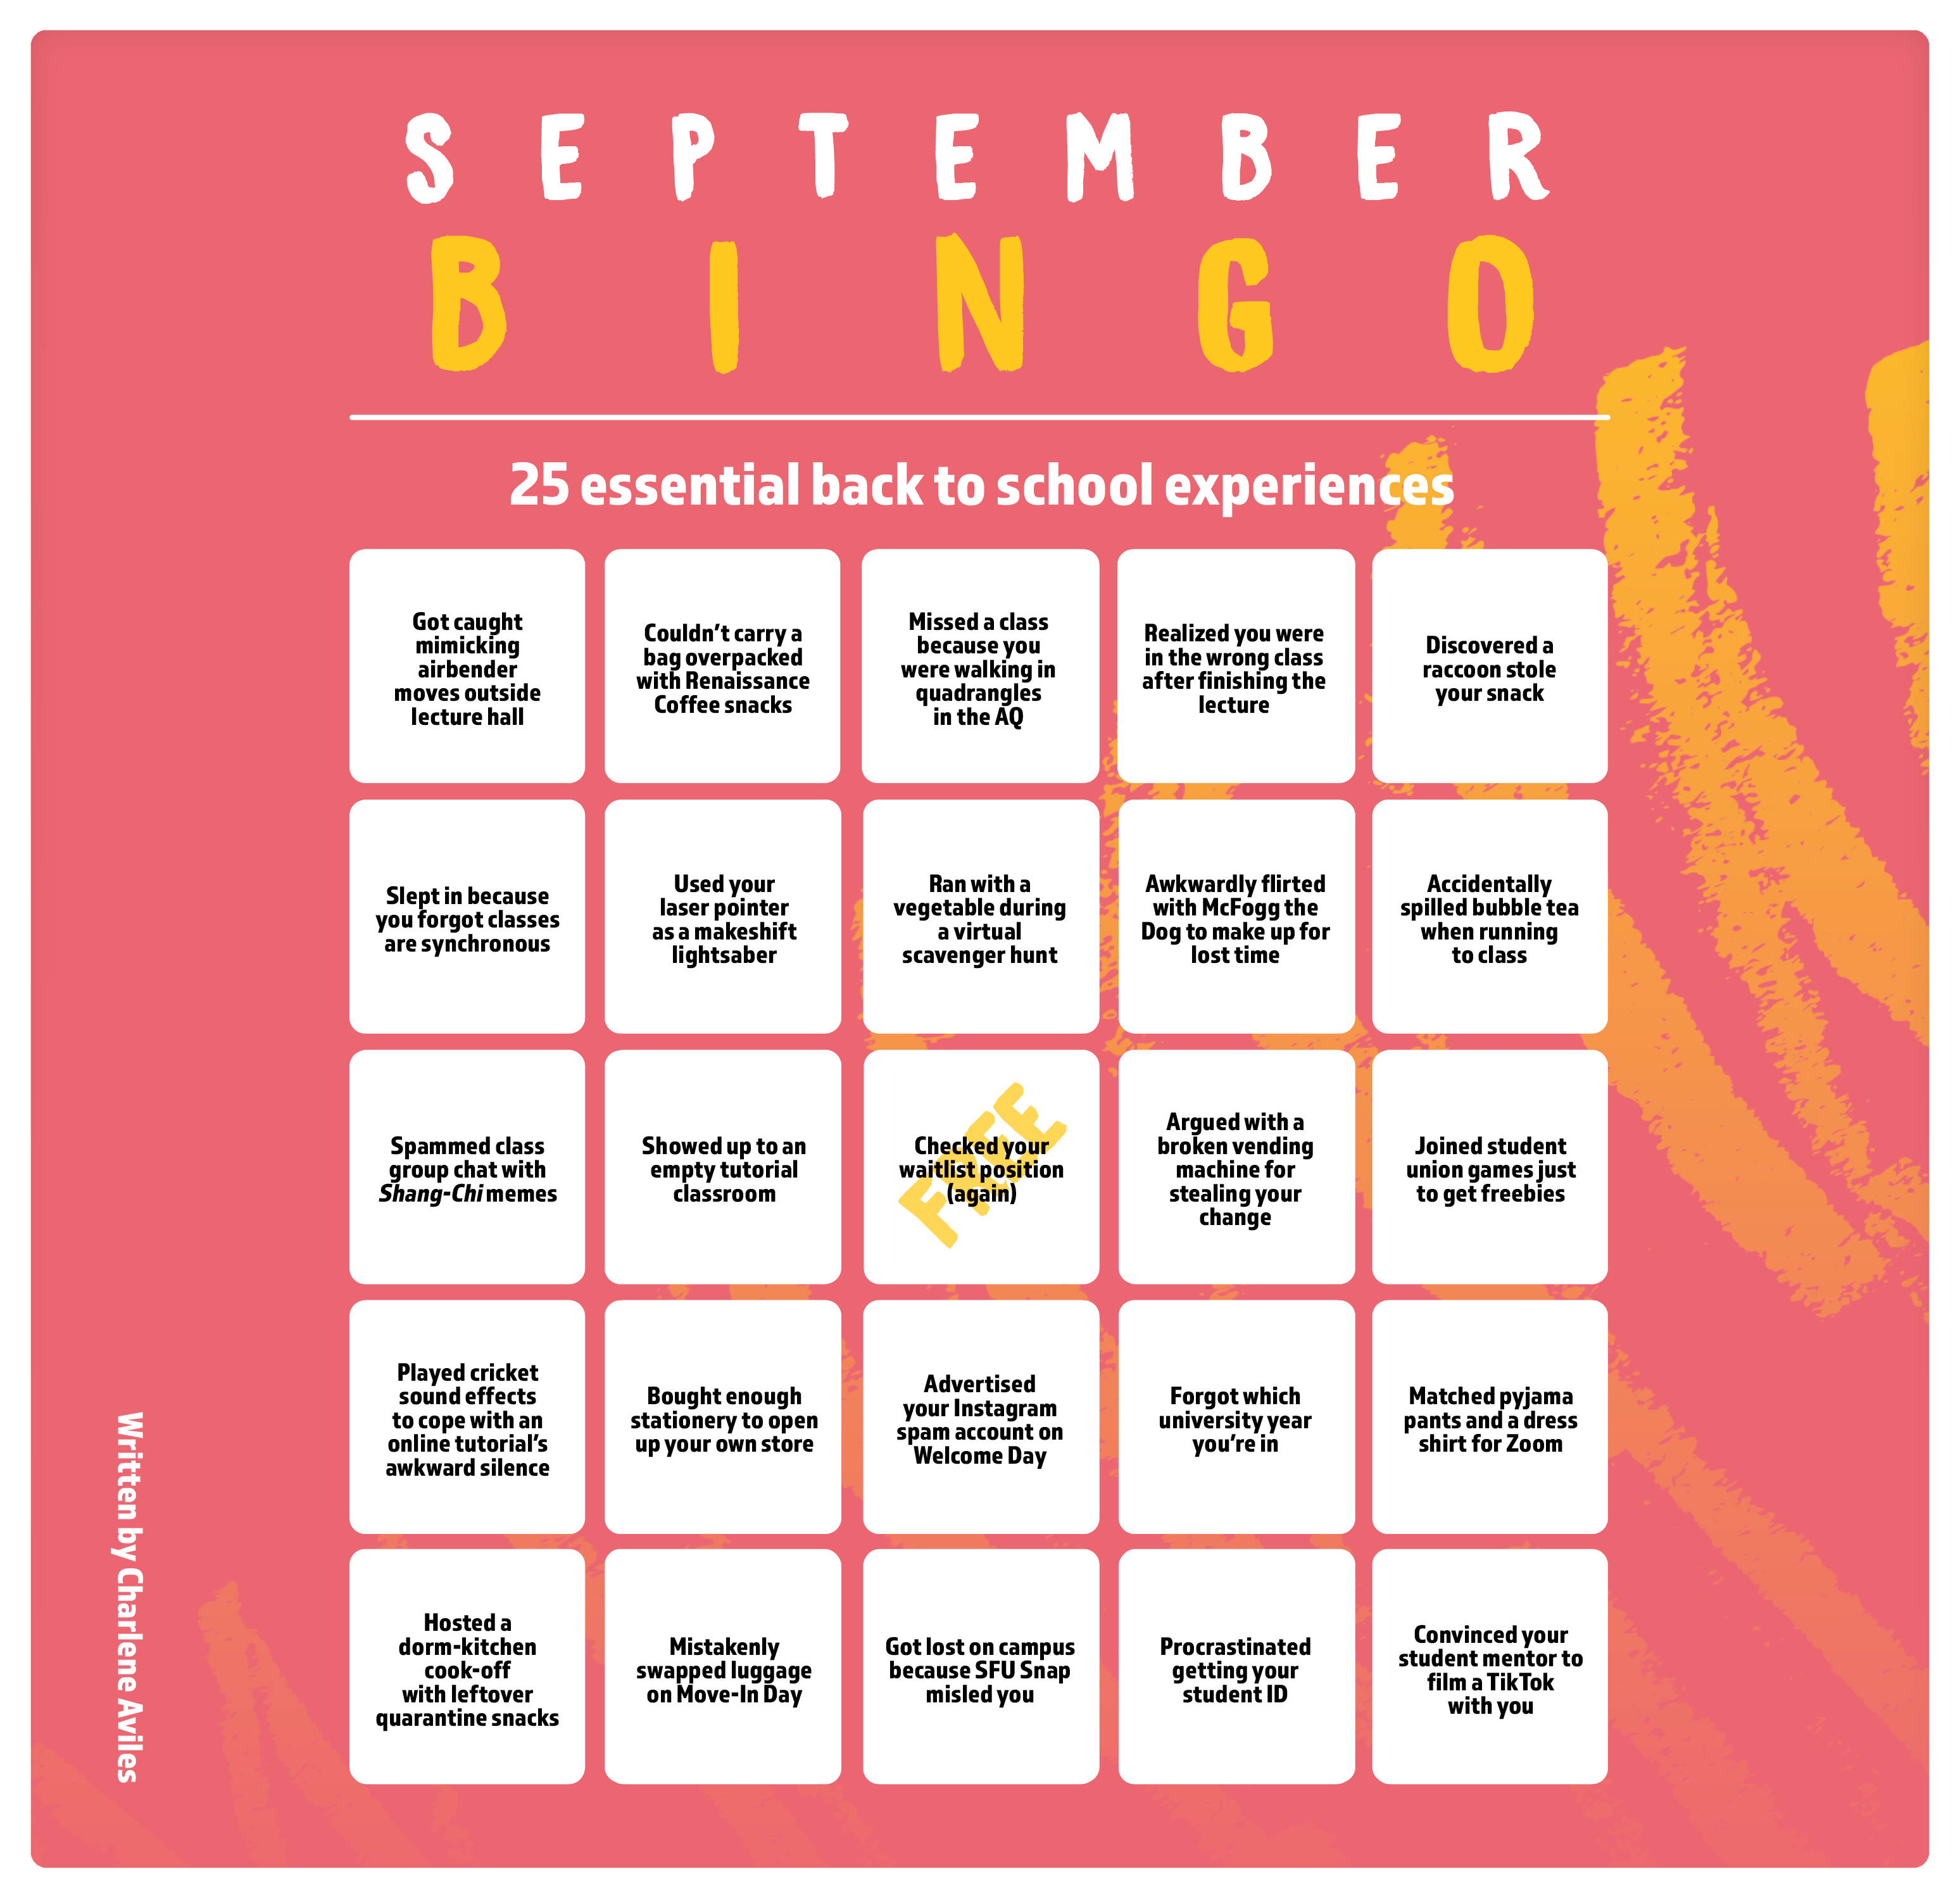 QUIZBINGO-SIPAT 2022 Bingo Card